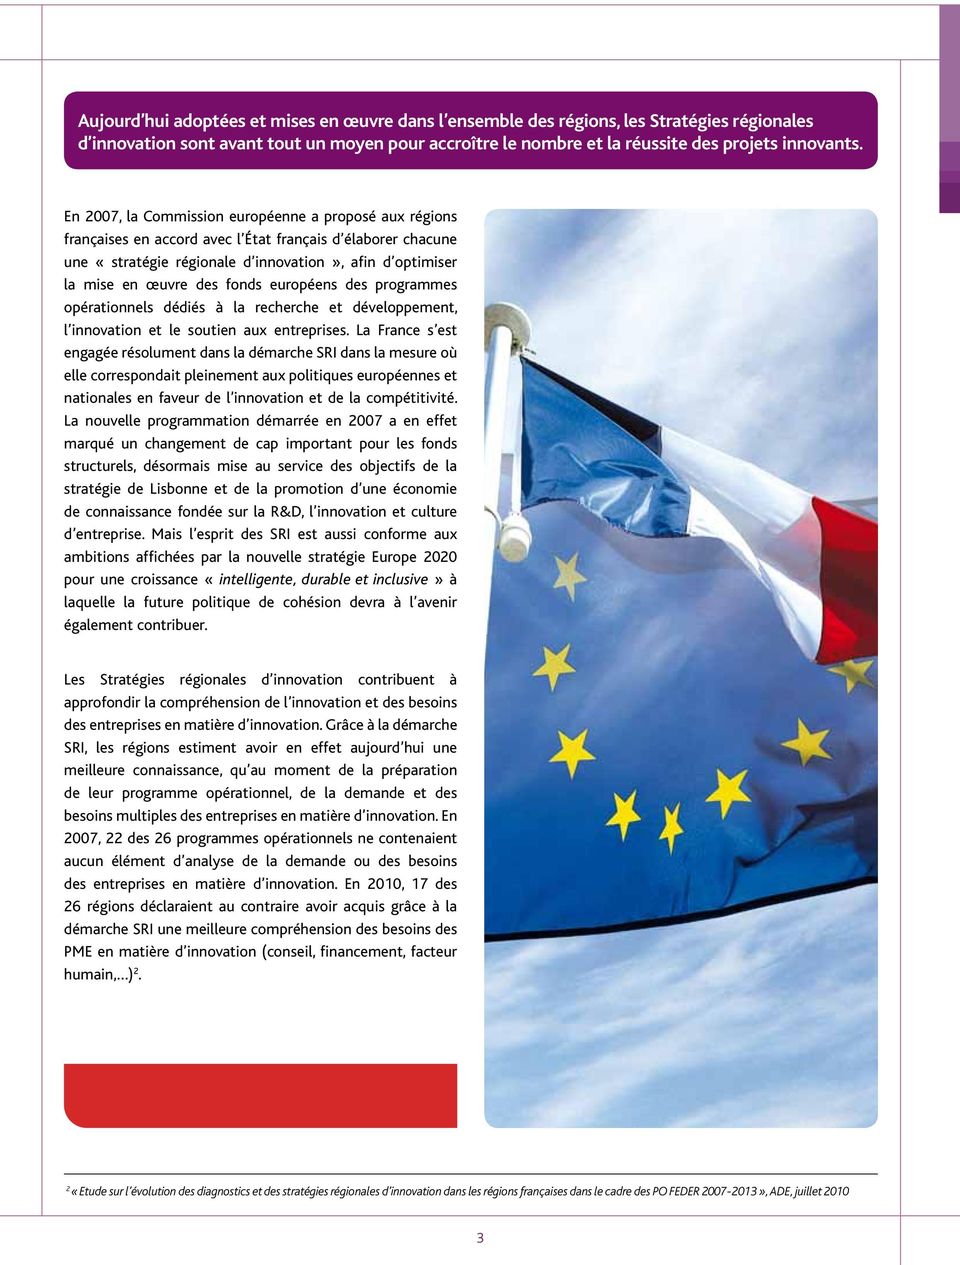 fonds européens des programmes opérationnels dédiés à la recherche et développement, l innovation et le soutien aux entreprises.